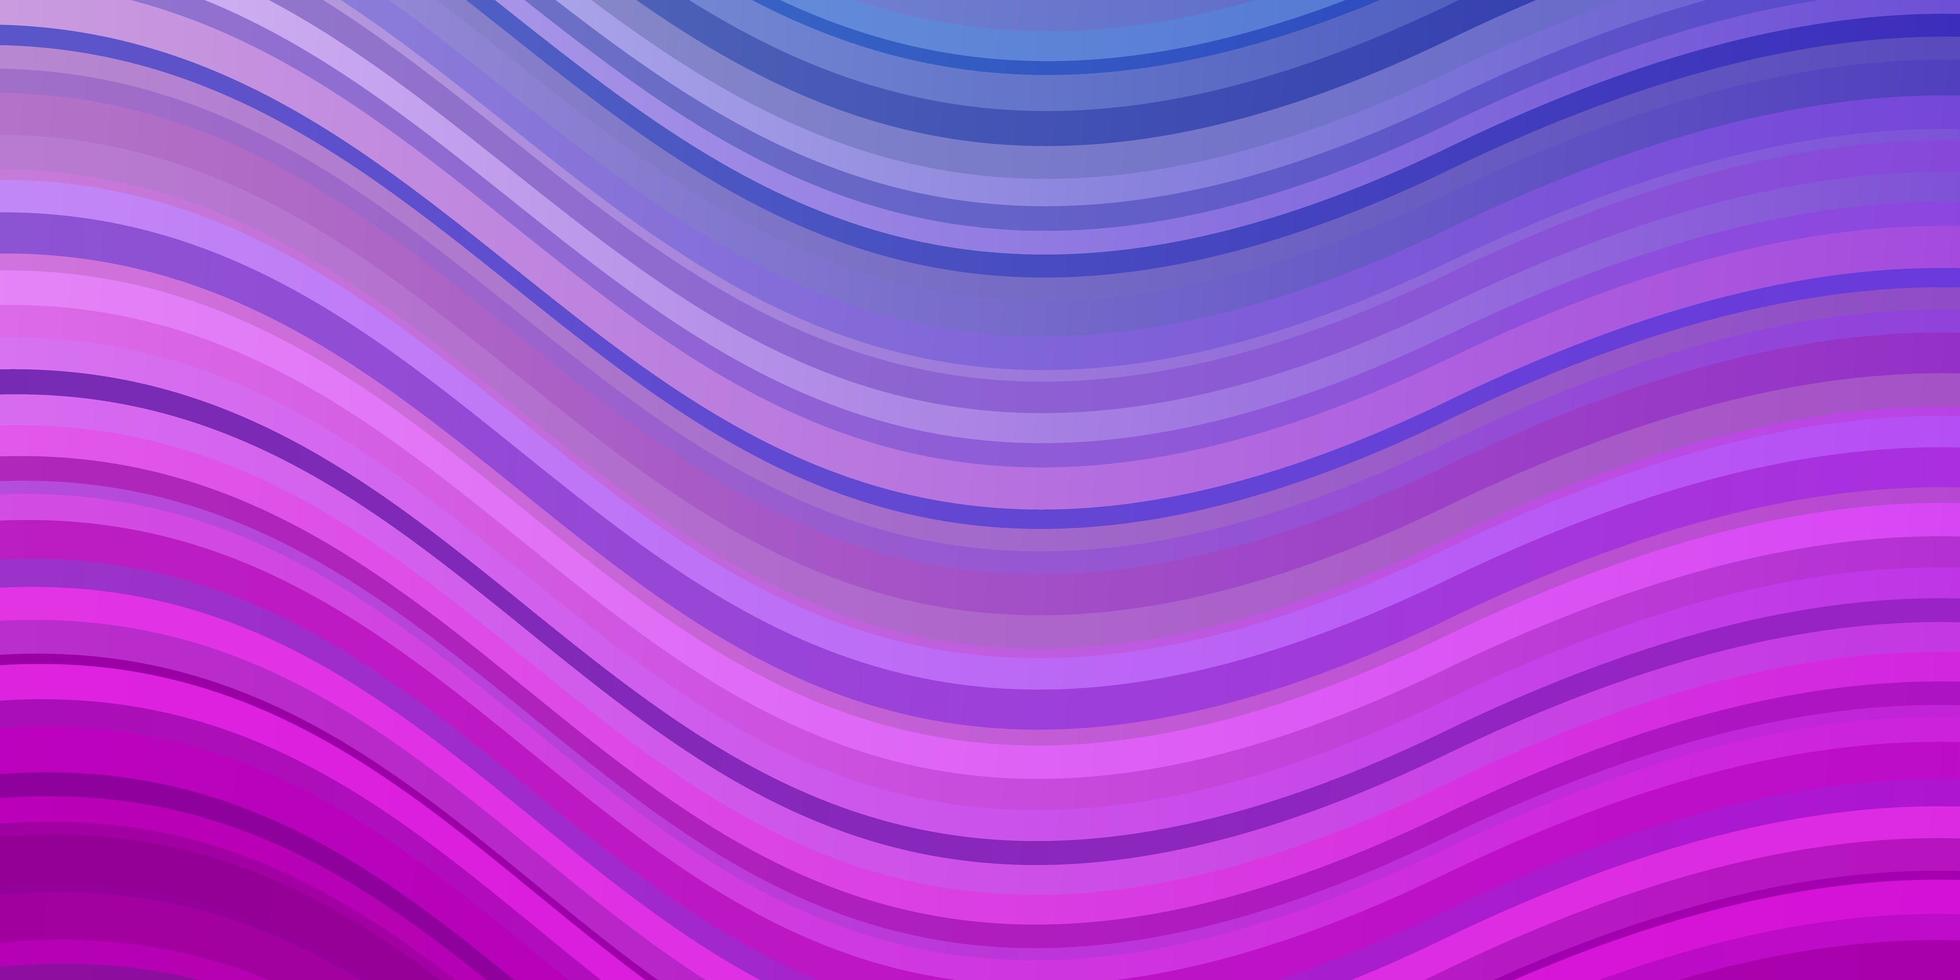 sfondo vettoriale rosa chiaro, blu con linee curve.